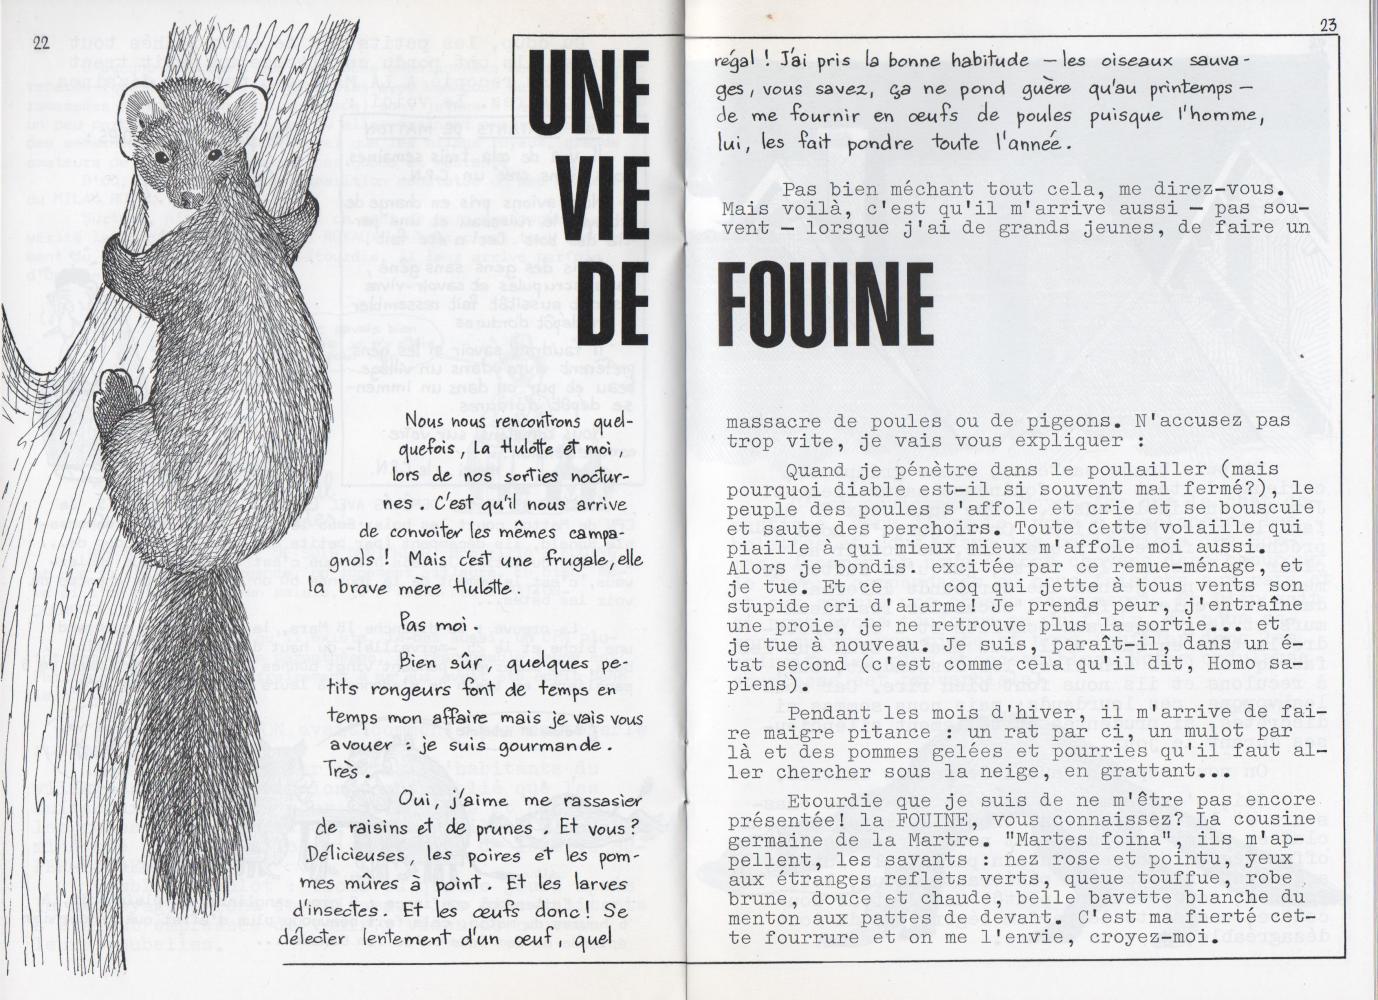 Extrait de La Hulotte n°11 (avril 1973)